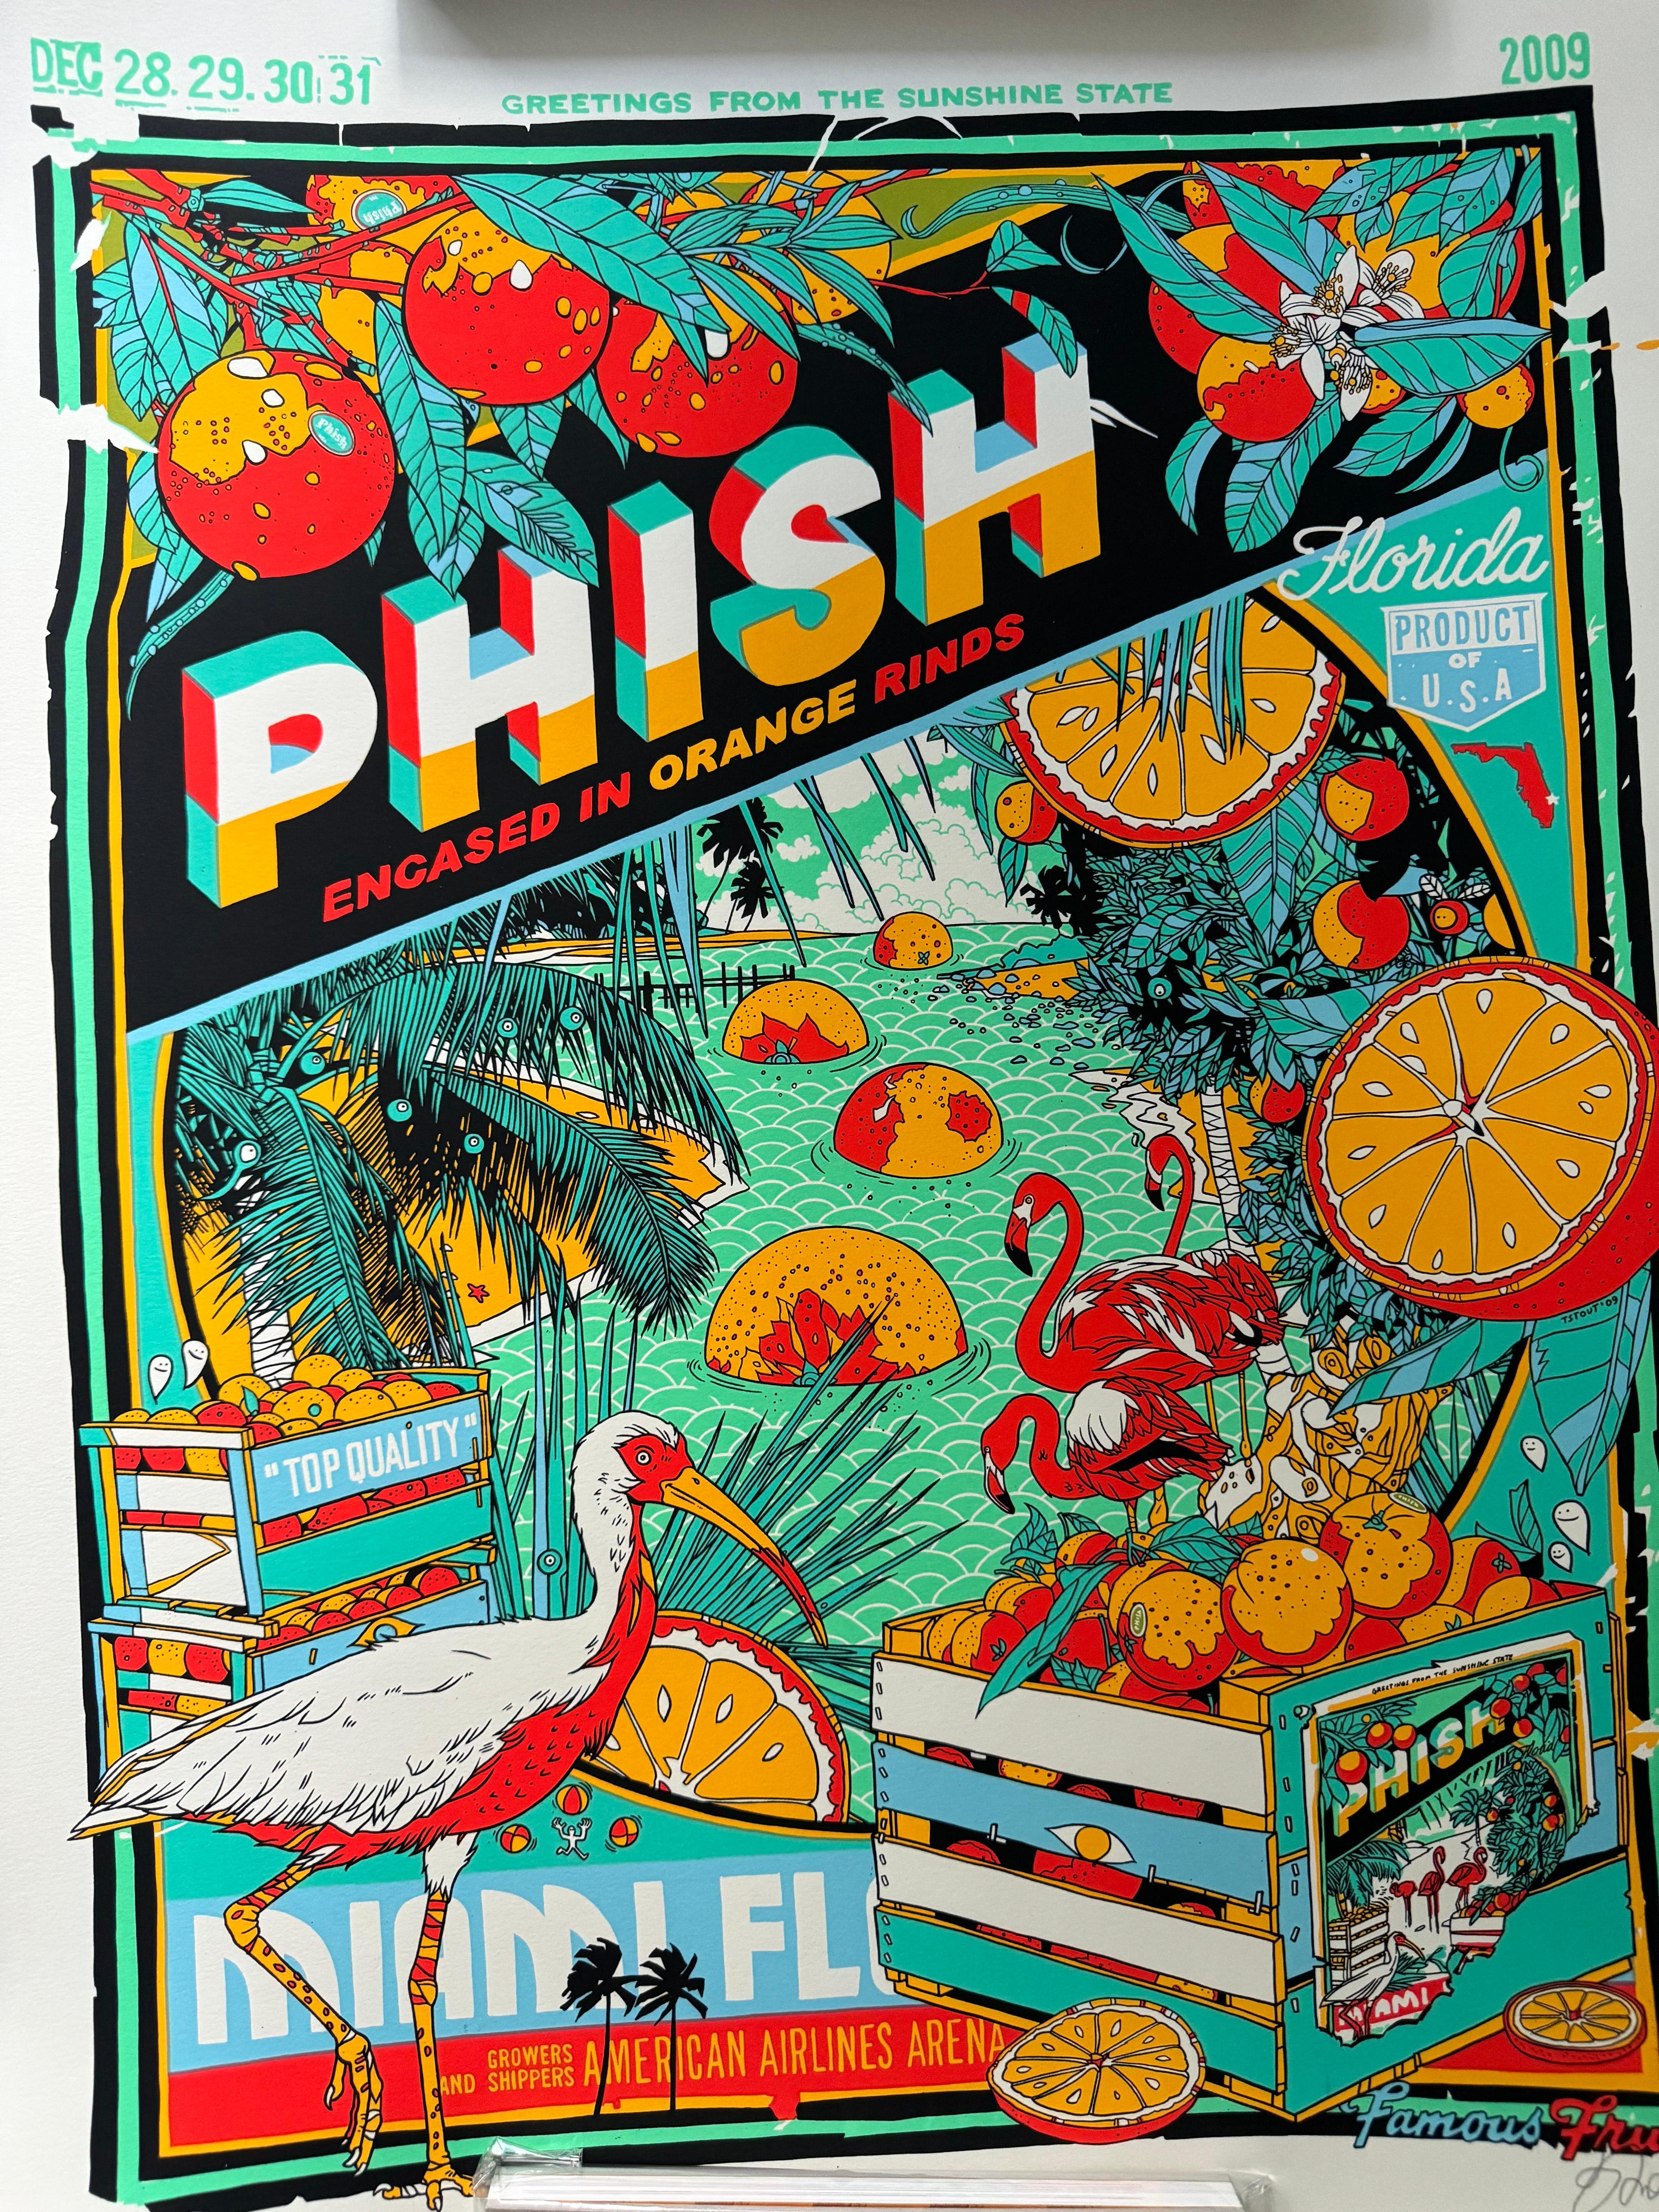 phish magazine